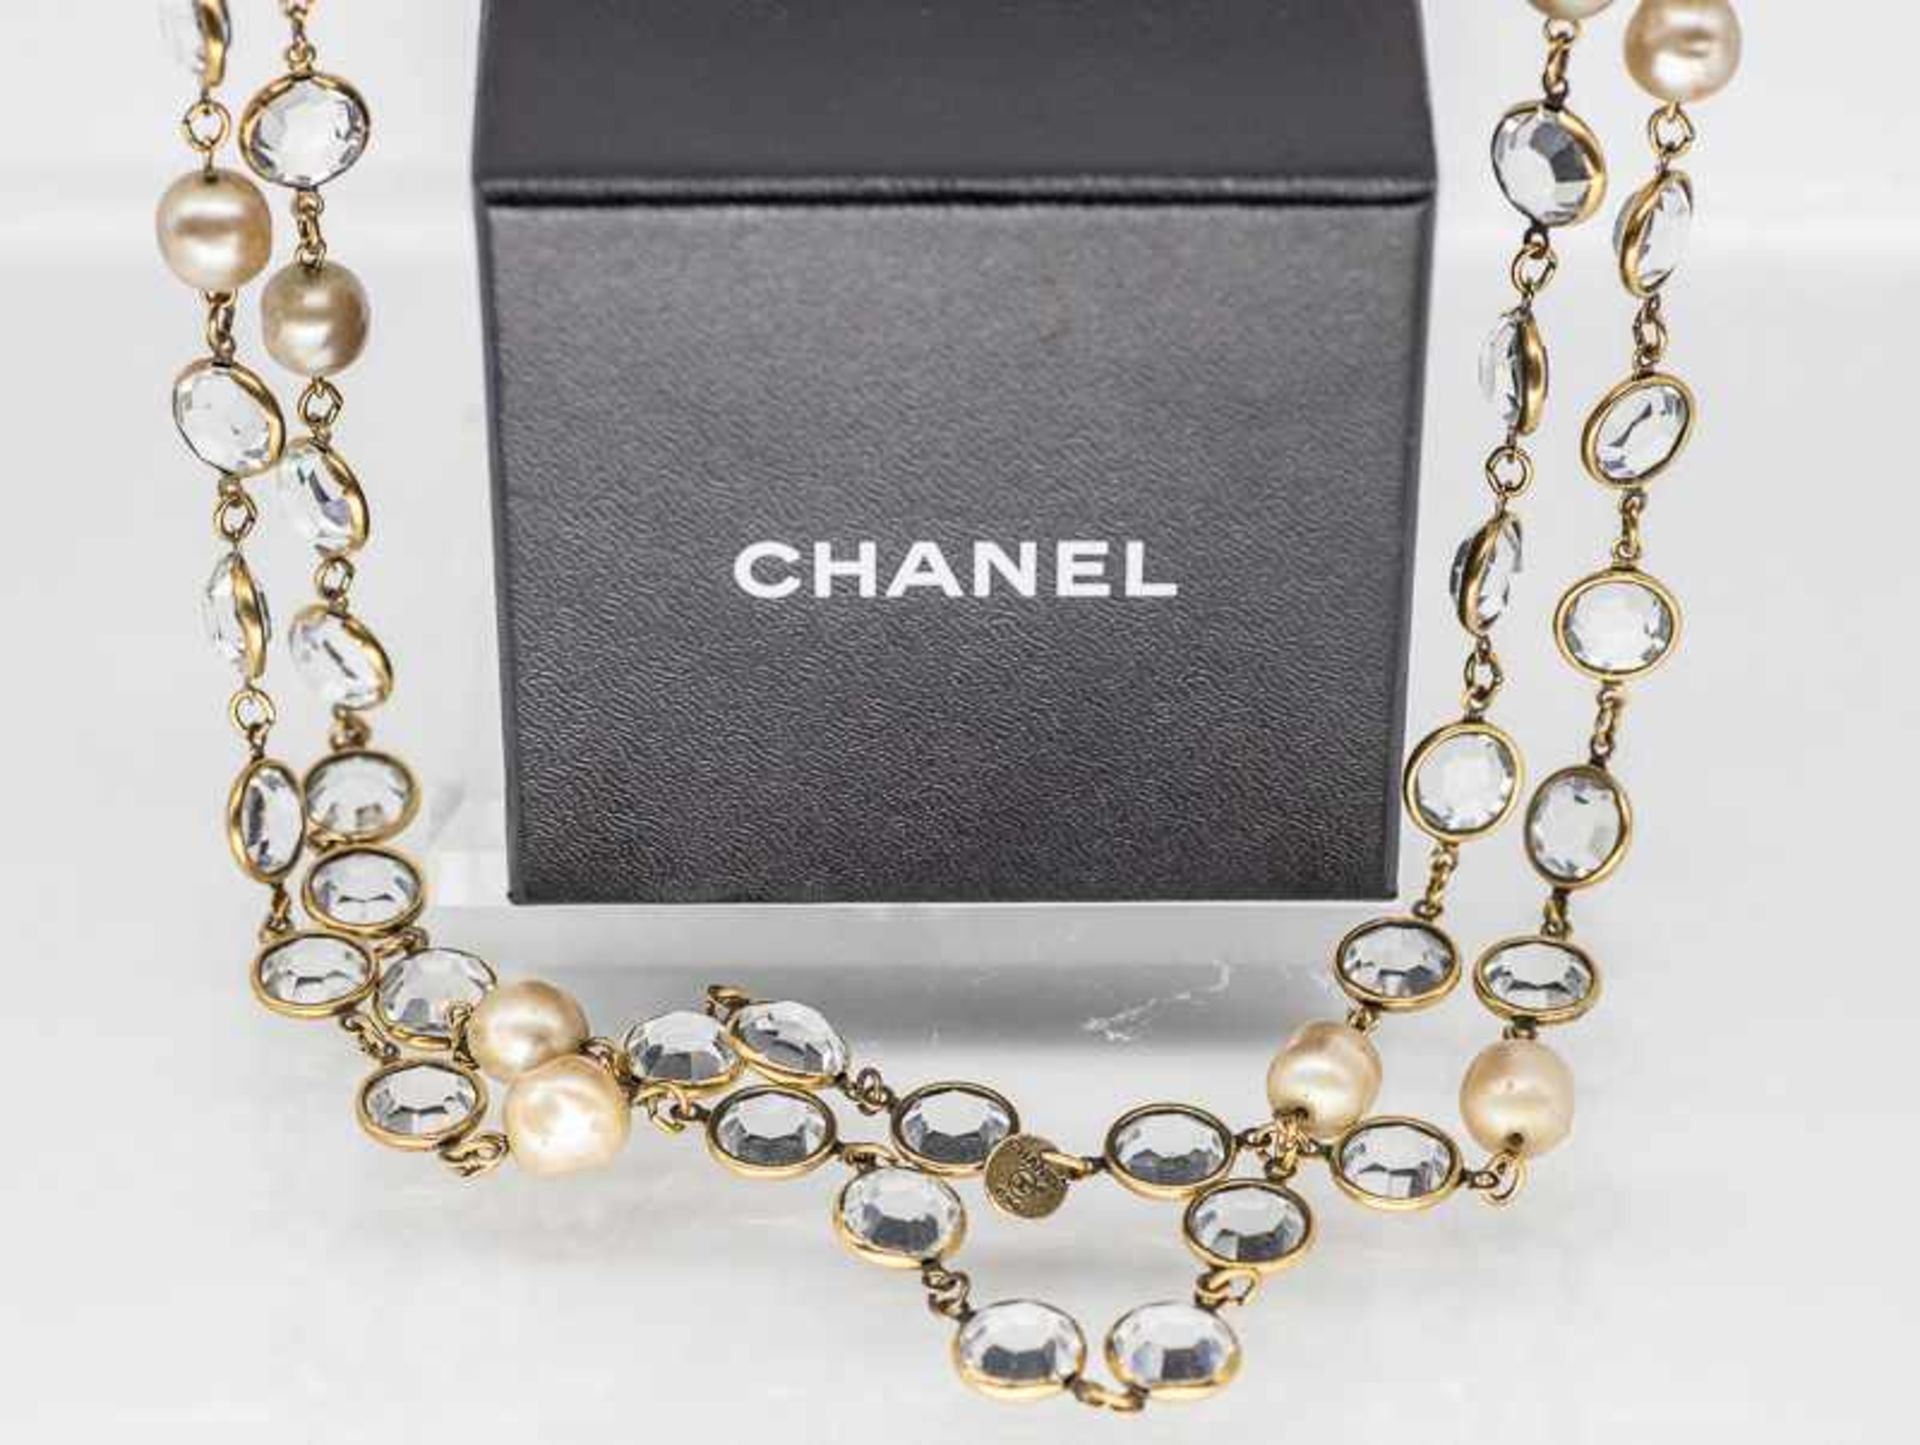 Langes Chanel-Collier mit farblosen Steinen und Perlenimitationen, Paris 1981.